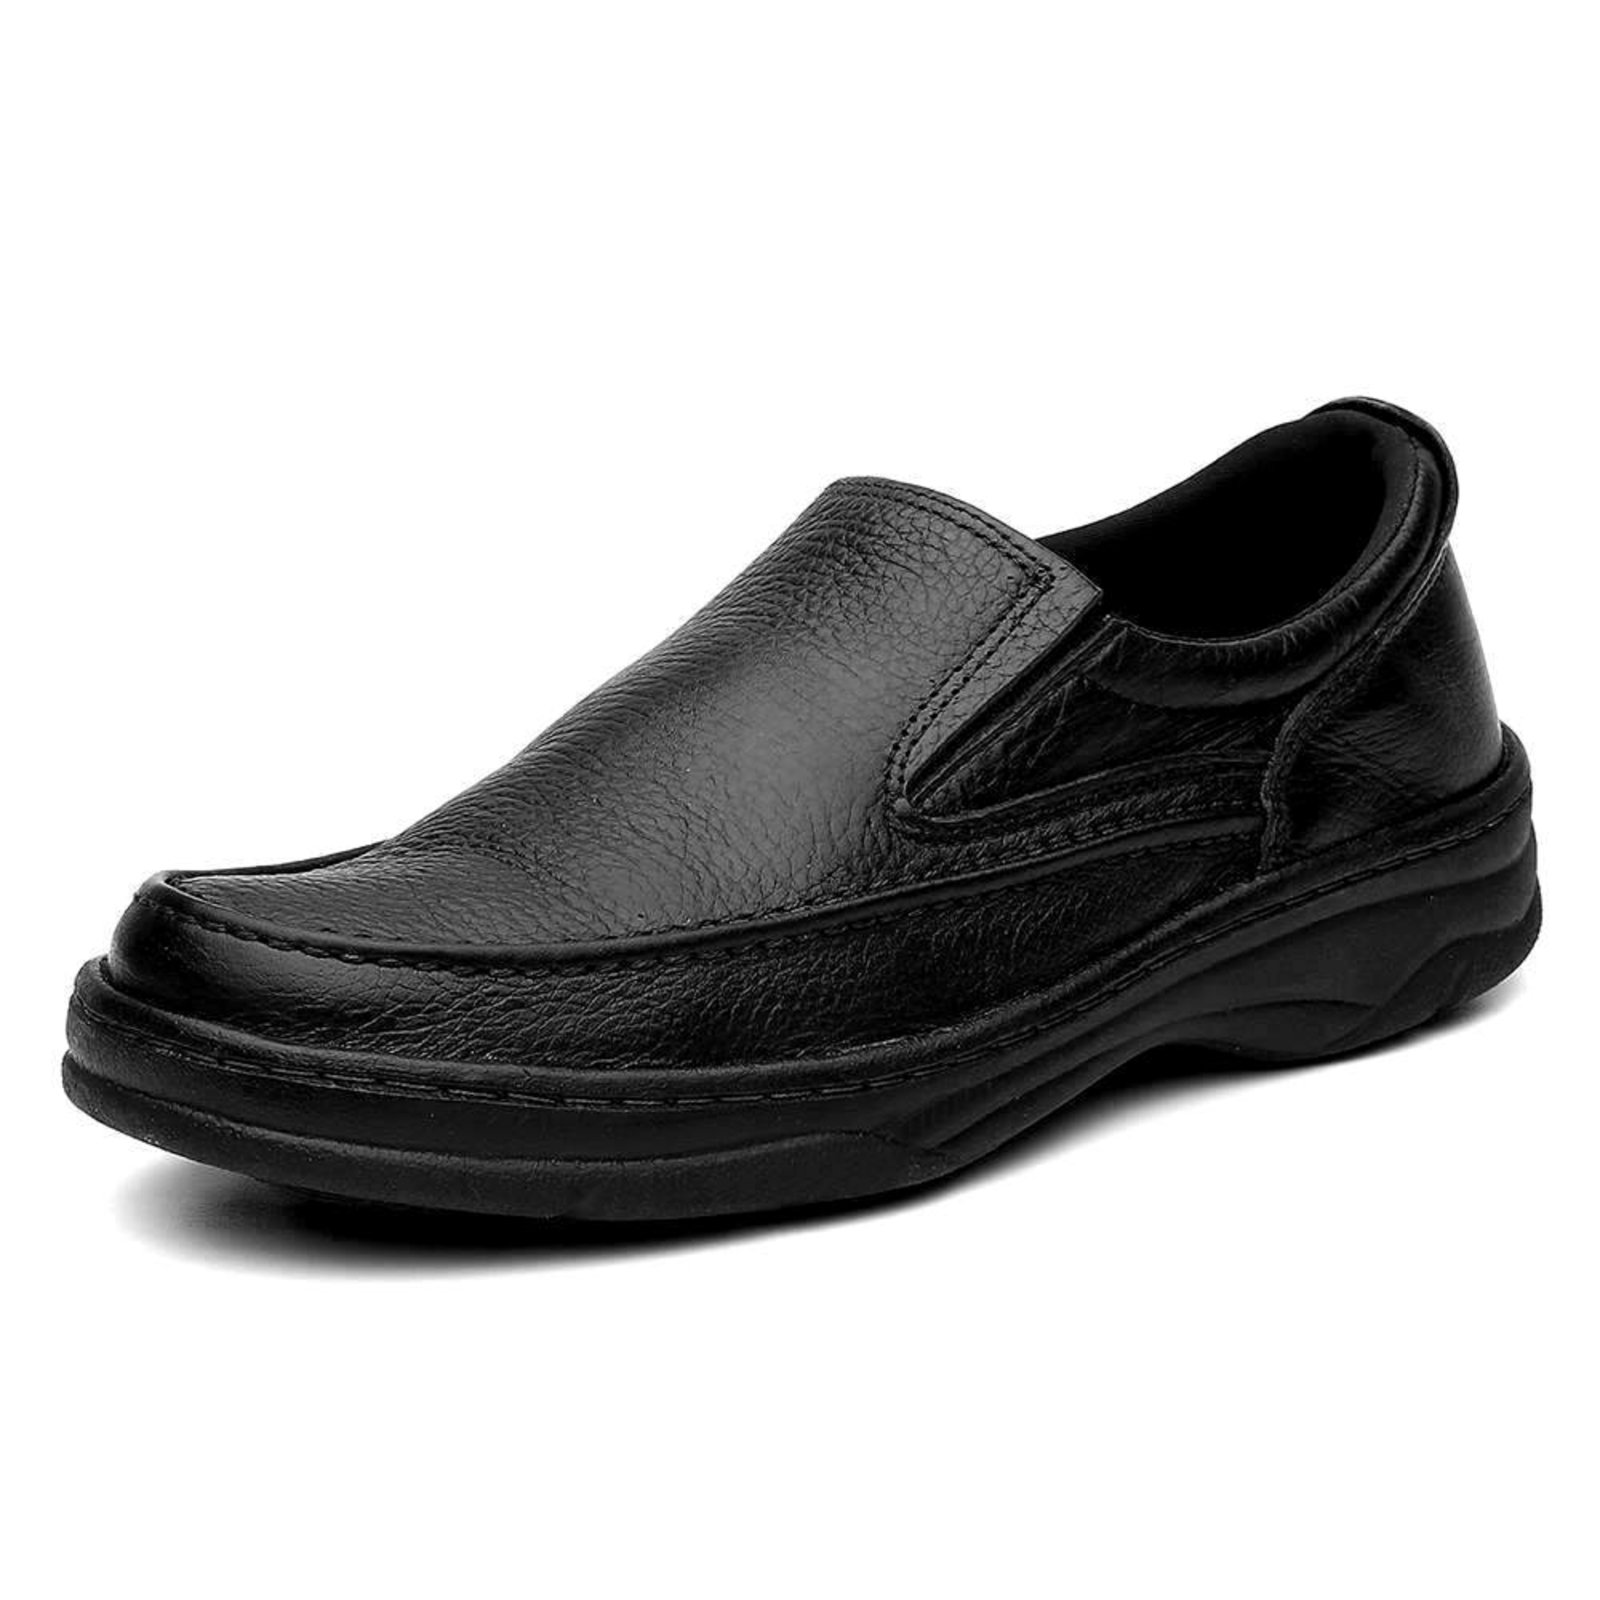 marca de sapato masculino confortavel